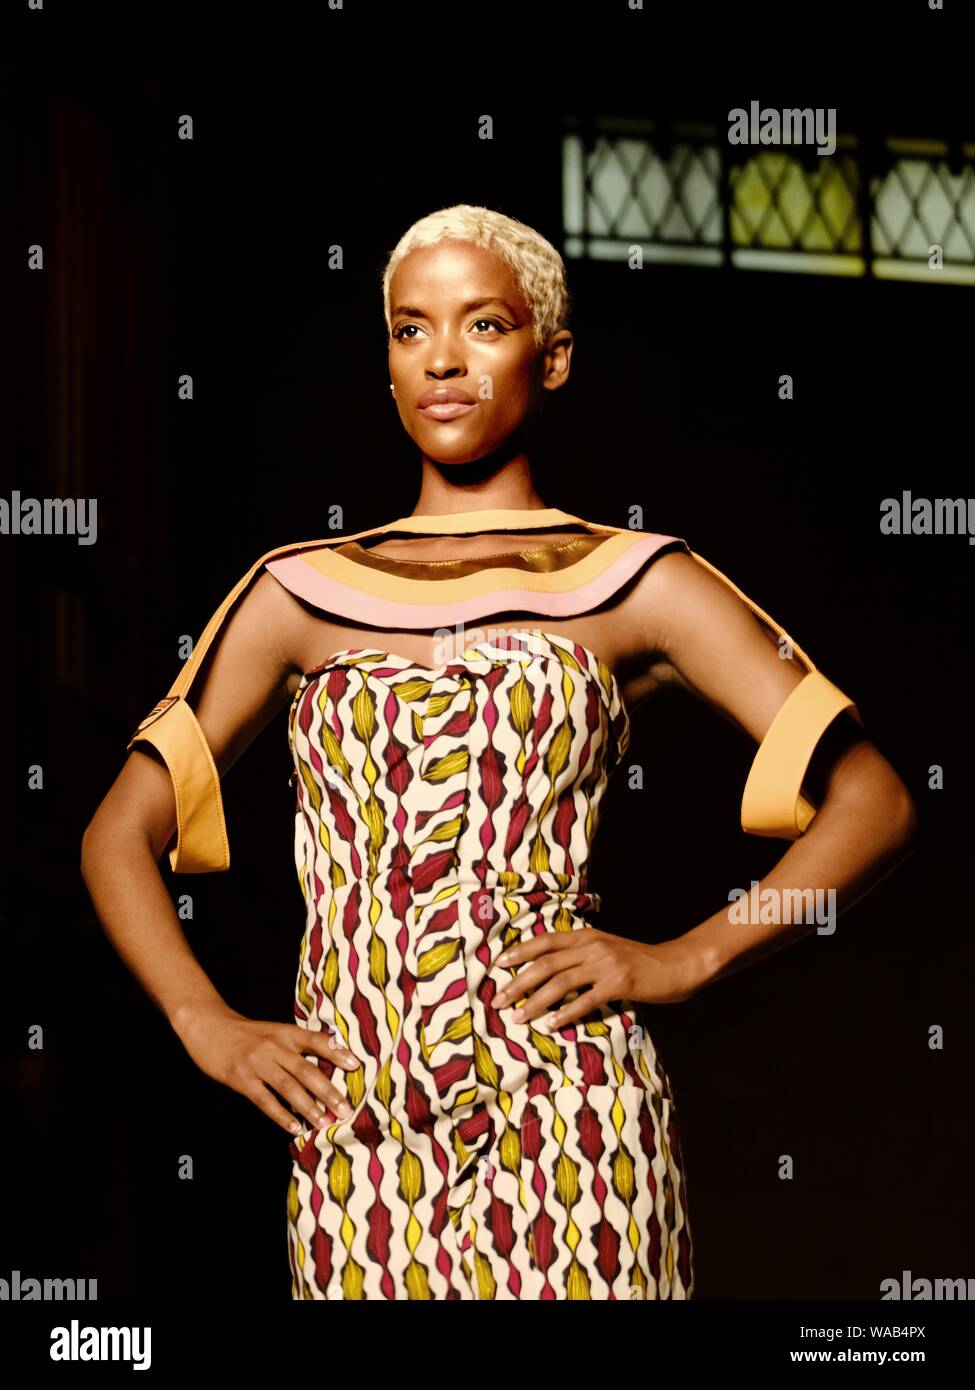 Une sombre promenade en noir blond pour le designer Muhire pendant la semaine de la mode de Londres Afrique. Banque D'Images